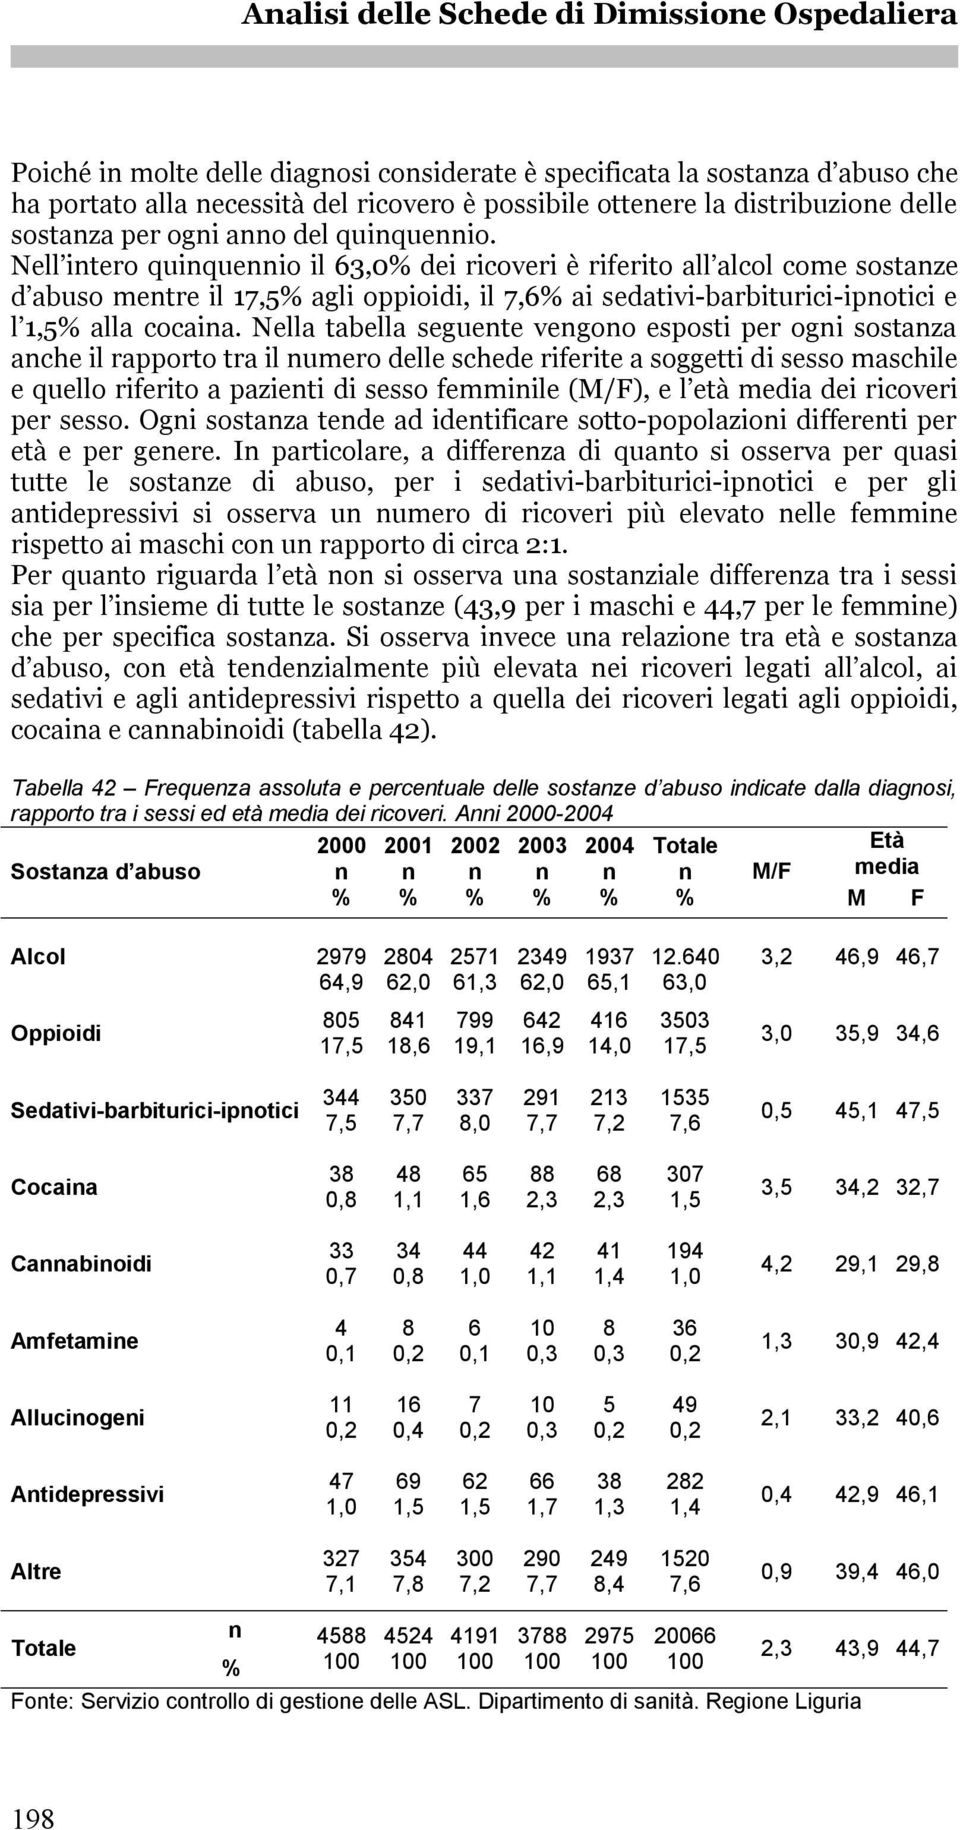 Nella tabella seguete vegoo esposti per ogi sostaza ache il rapporto tra il umero delle schede riferite a soggetti di sesso maschile e quello riferito a pazieti di sesso femmiile (M/F), e l età media